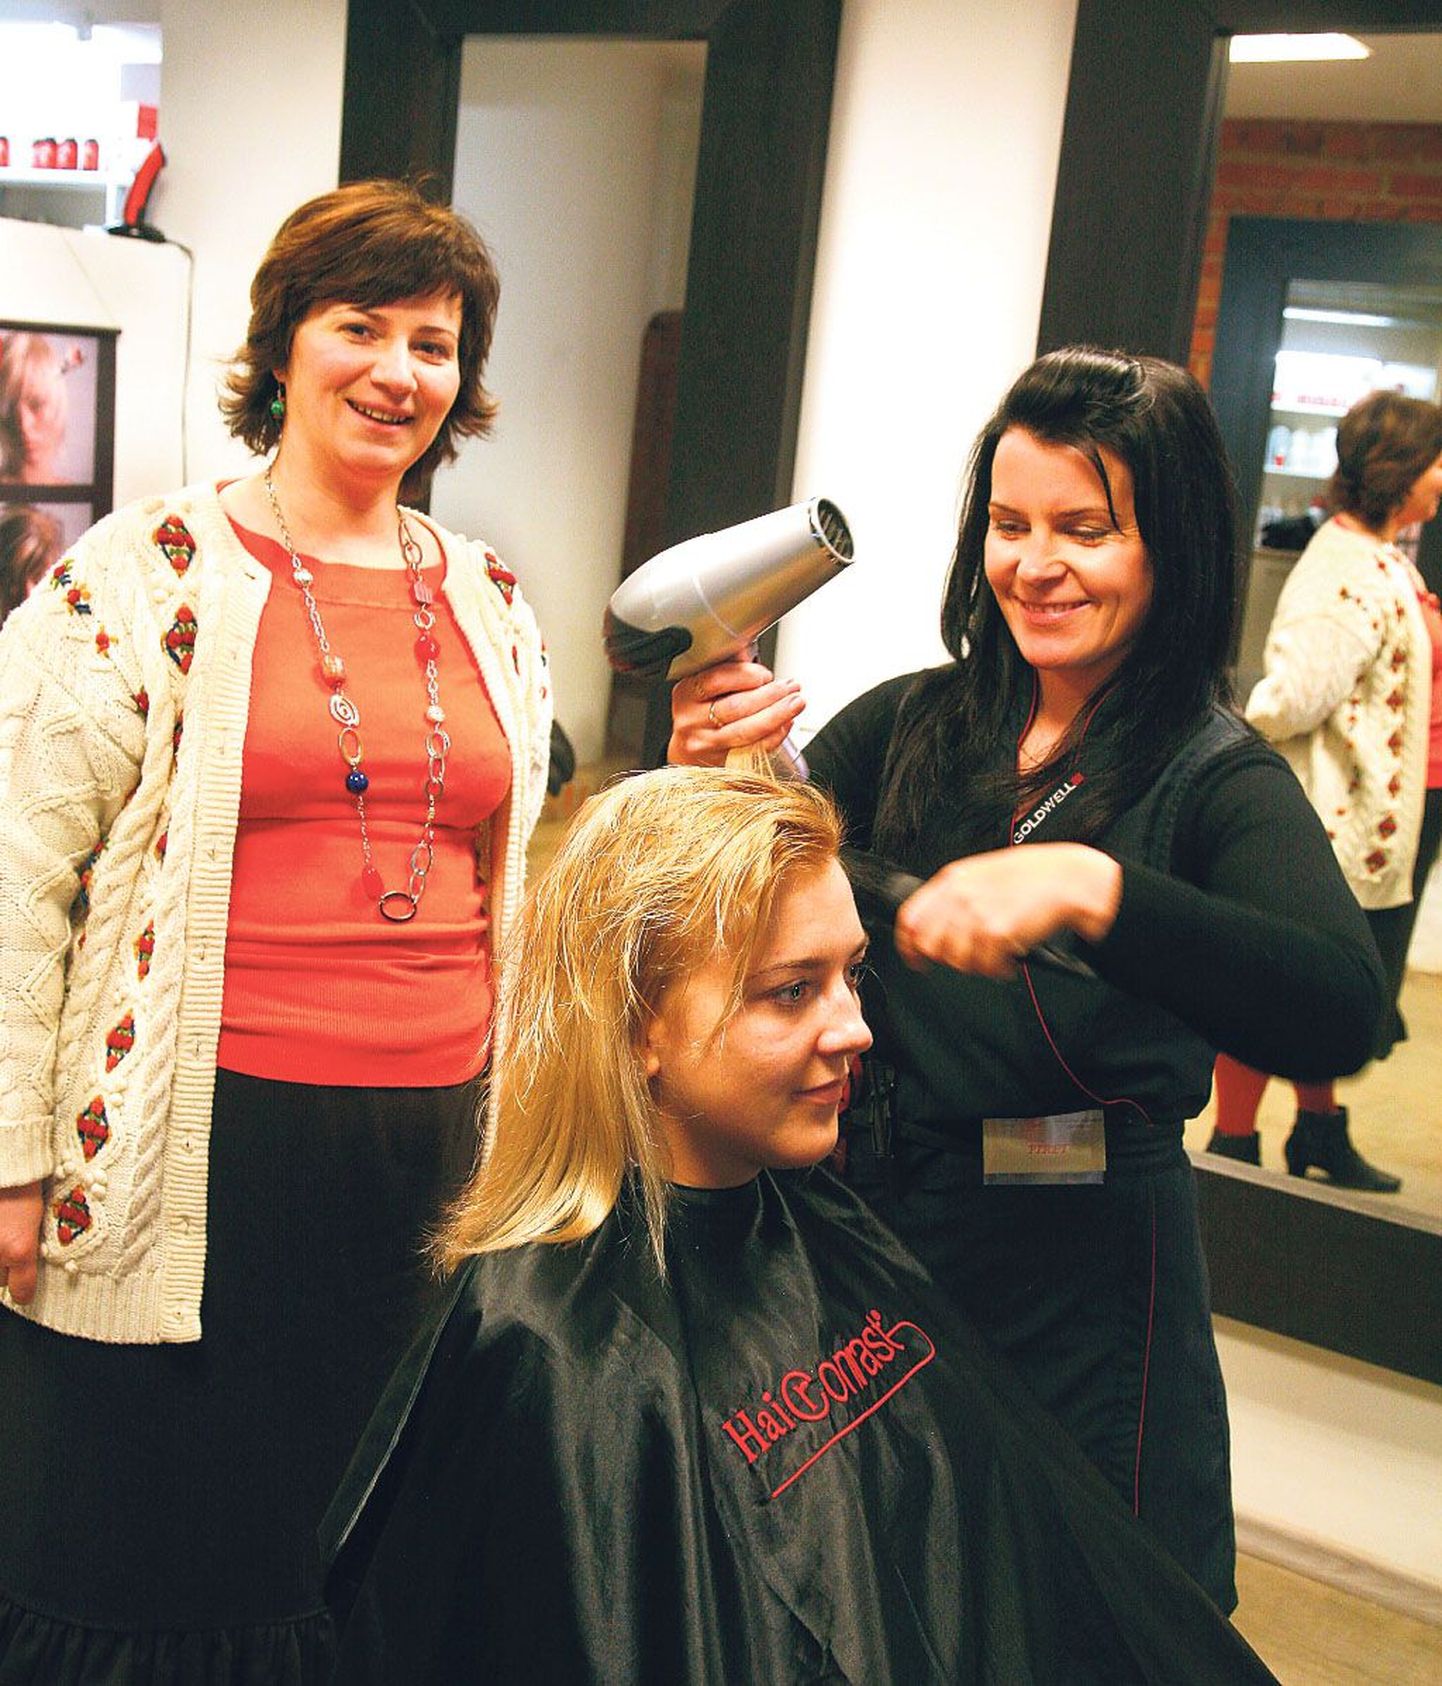 Nii juuksuri- kui kosmeetikutööd oskaval Piret Saaremägil (paremal) oli proovipäev otsustamaks, kas talle meeldiks stuudios töötada. Krista Habakukk (vasakul) jälgis juuksur Eneli Hansonile tehtud lõikuse tulemust.